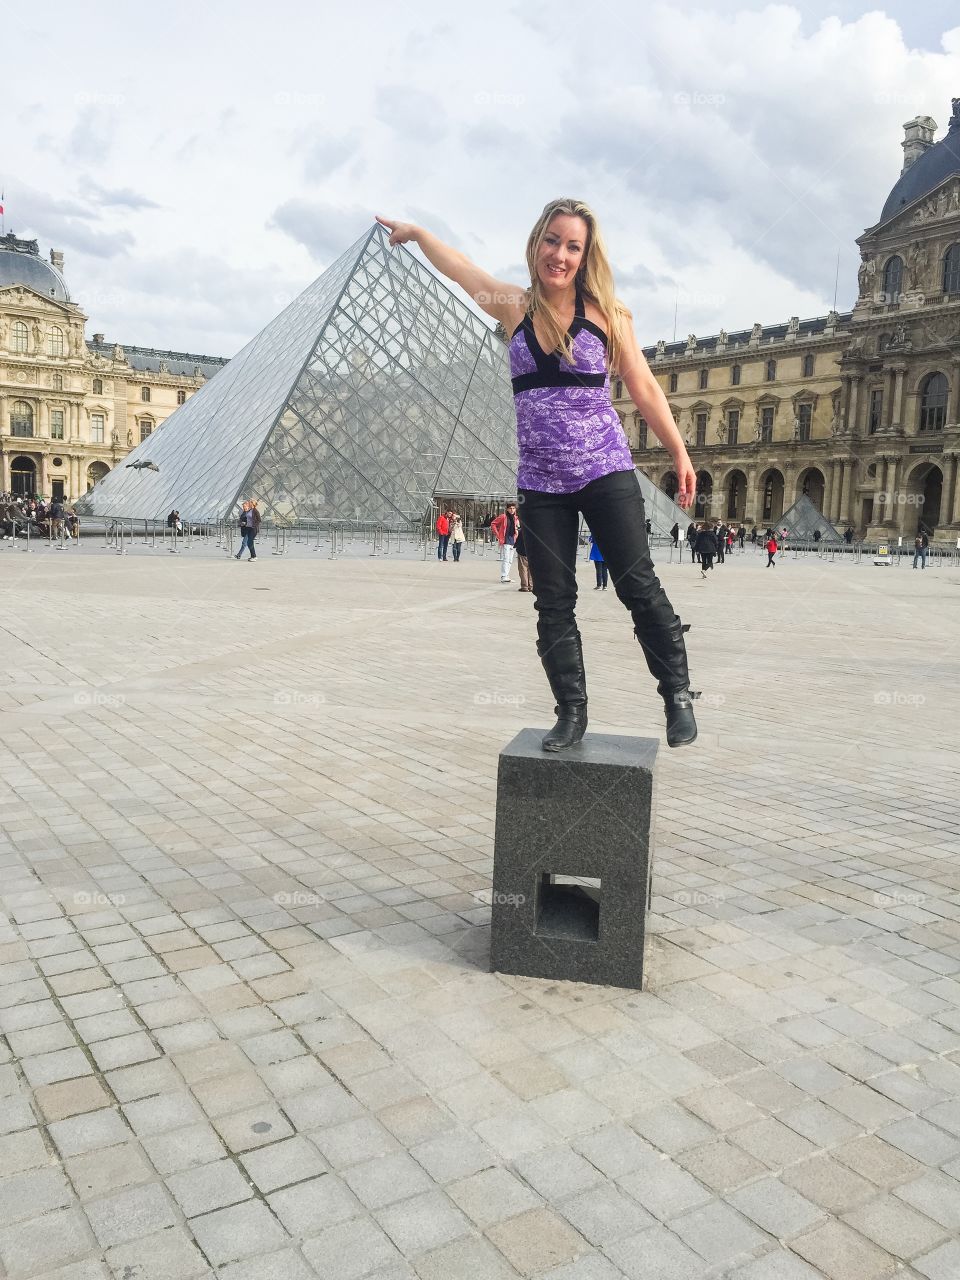 Tourist Woman at Louvren in Paris France.